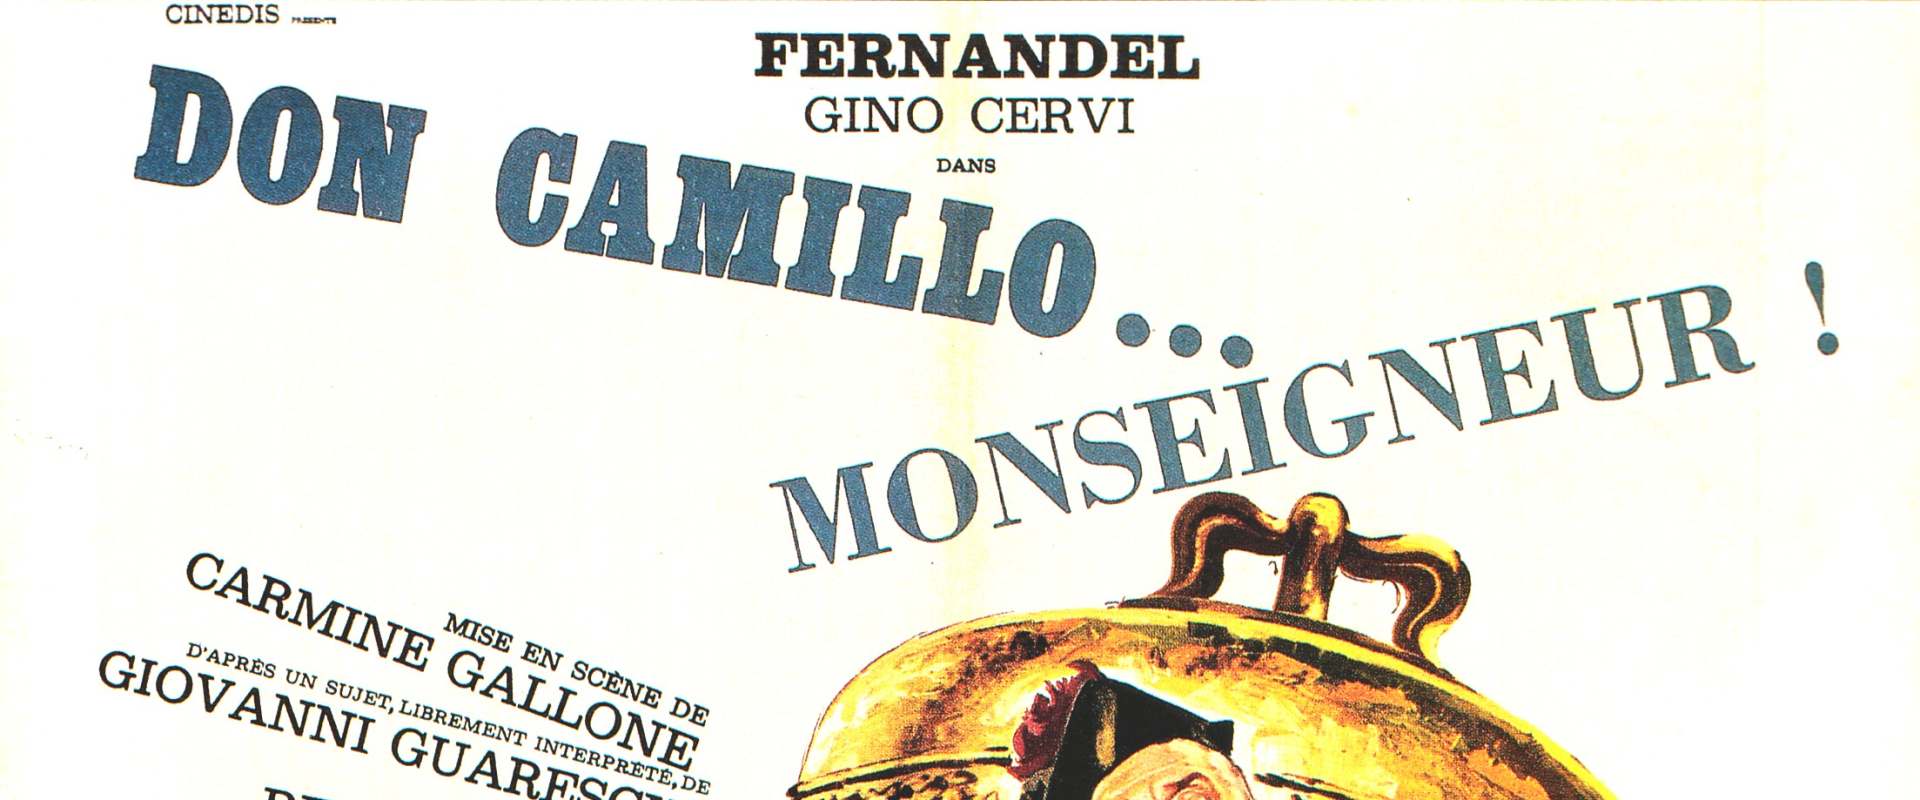 Don Camillo: Monsignor background 2